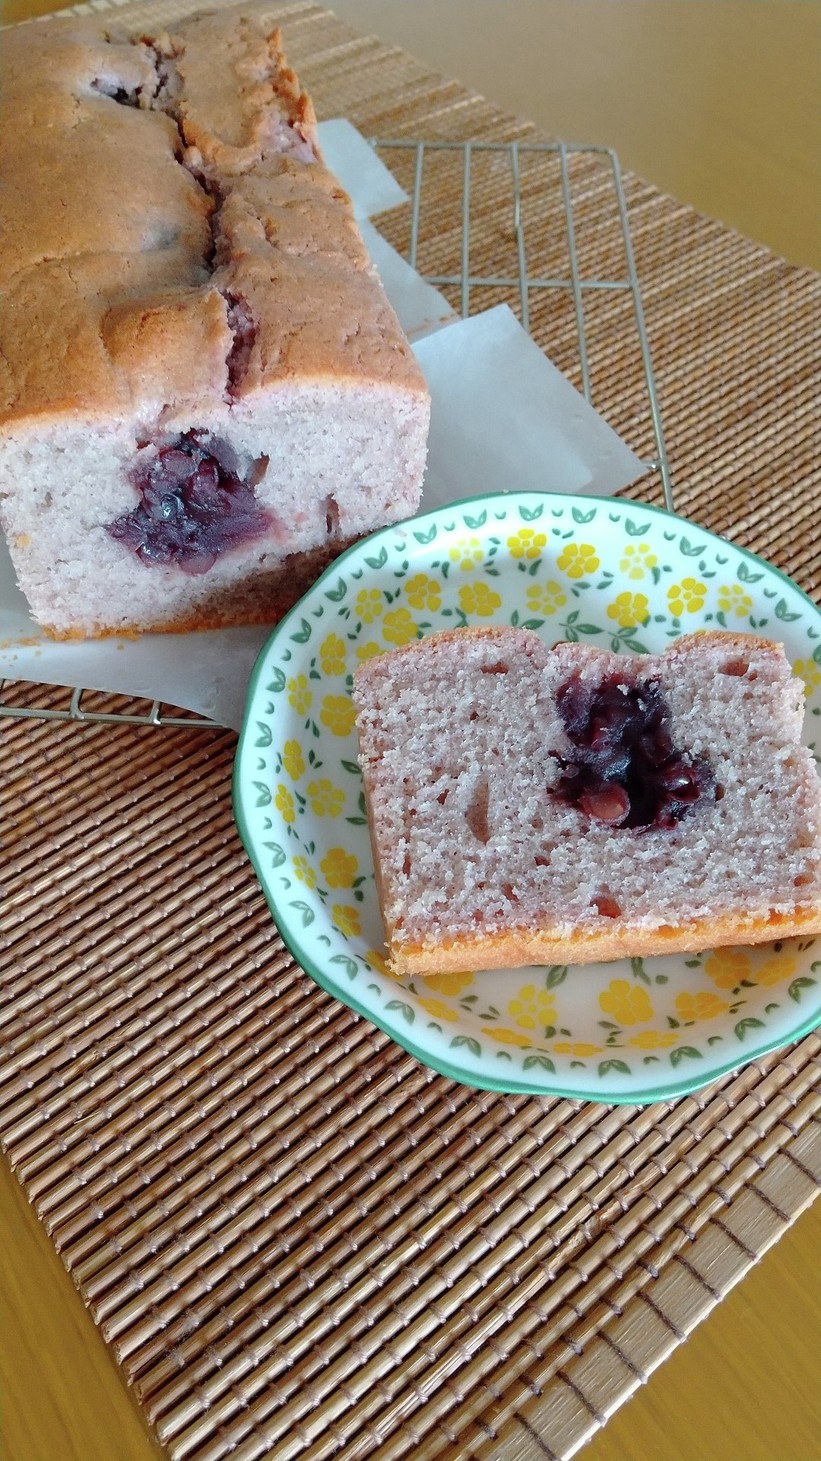 紫芋パウダー活用餡入りパウンドケーキの画像